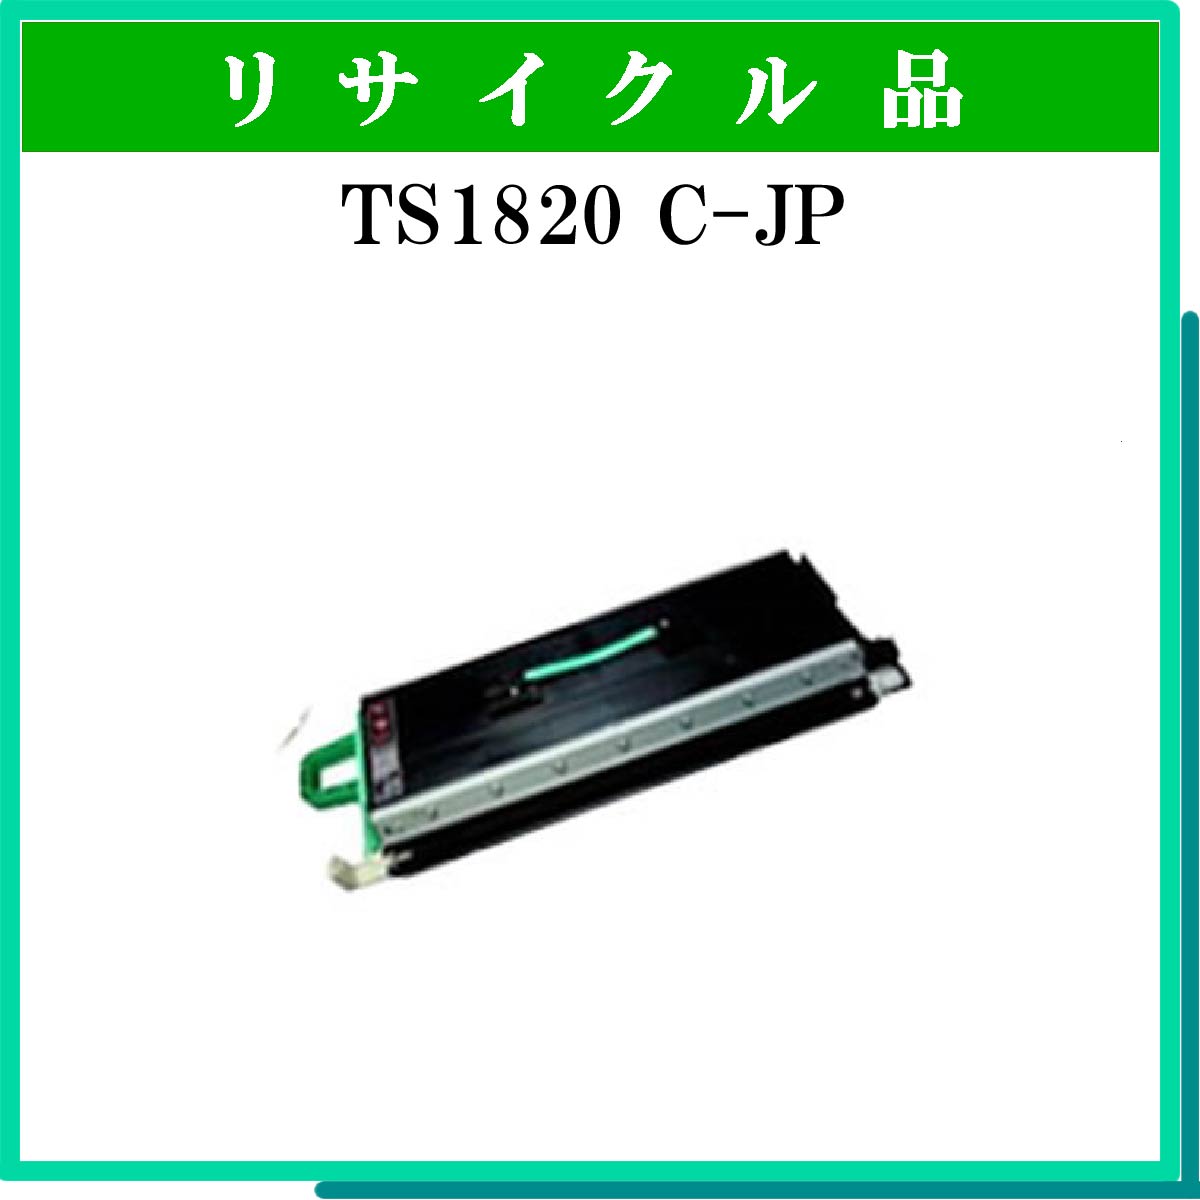 TS1820 C-JP